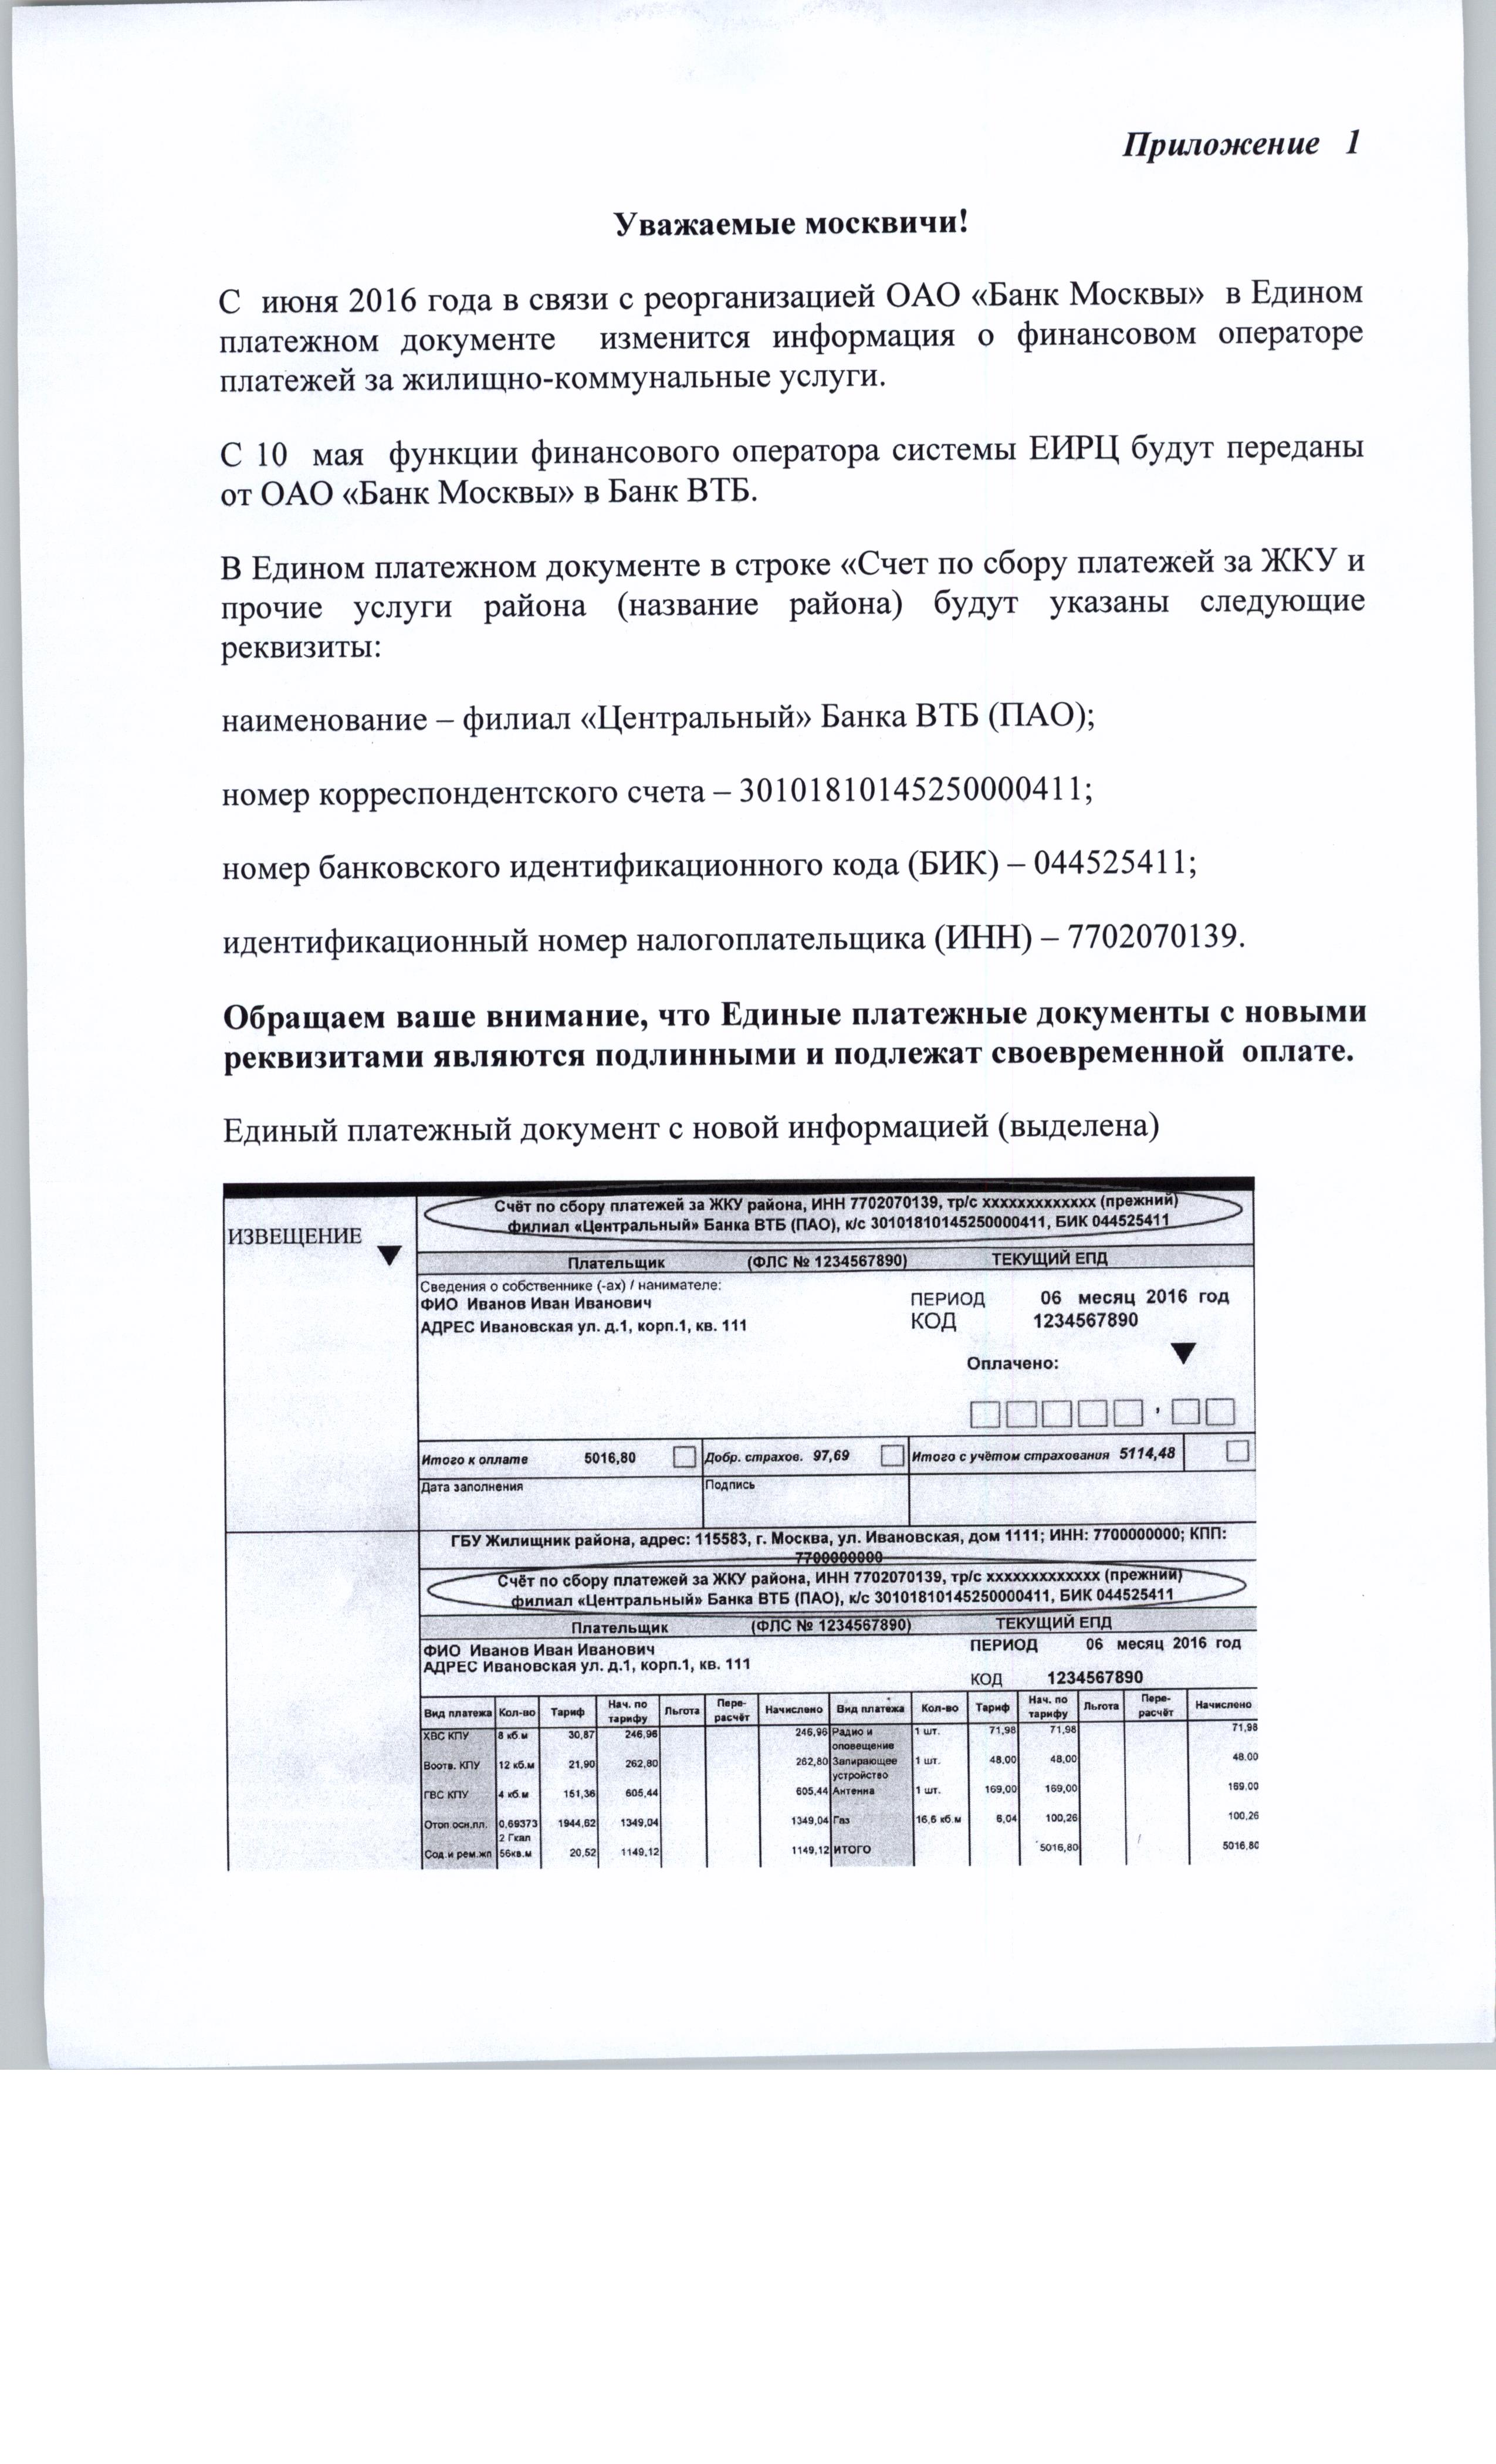 Реорганизация ОАО "Банк Москвы" и соответствующие изменения в платежных документах